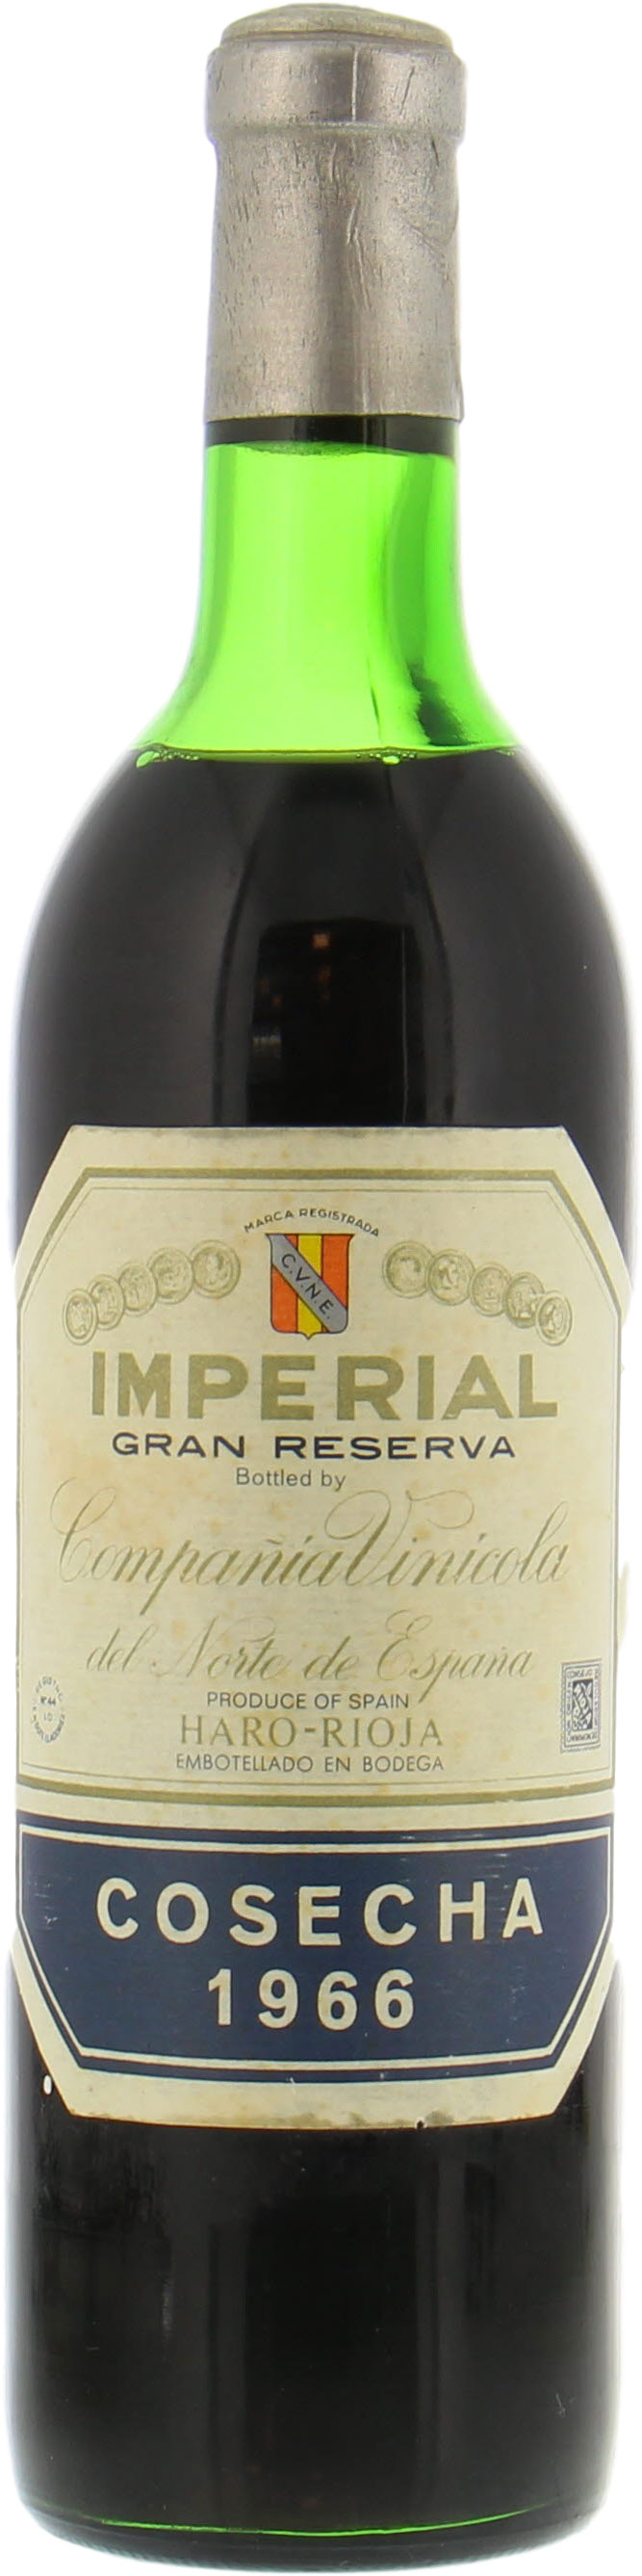 CVNE - Imperial Gran Reserva 1966